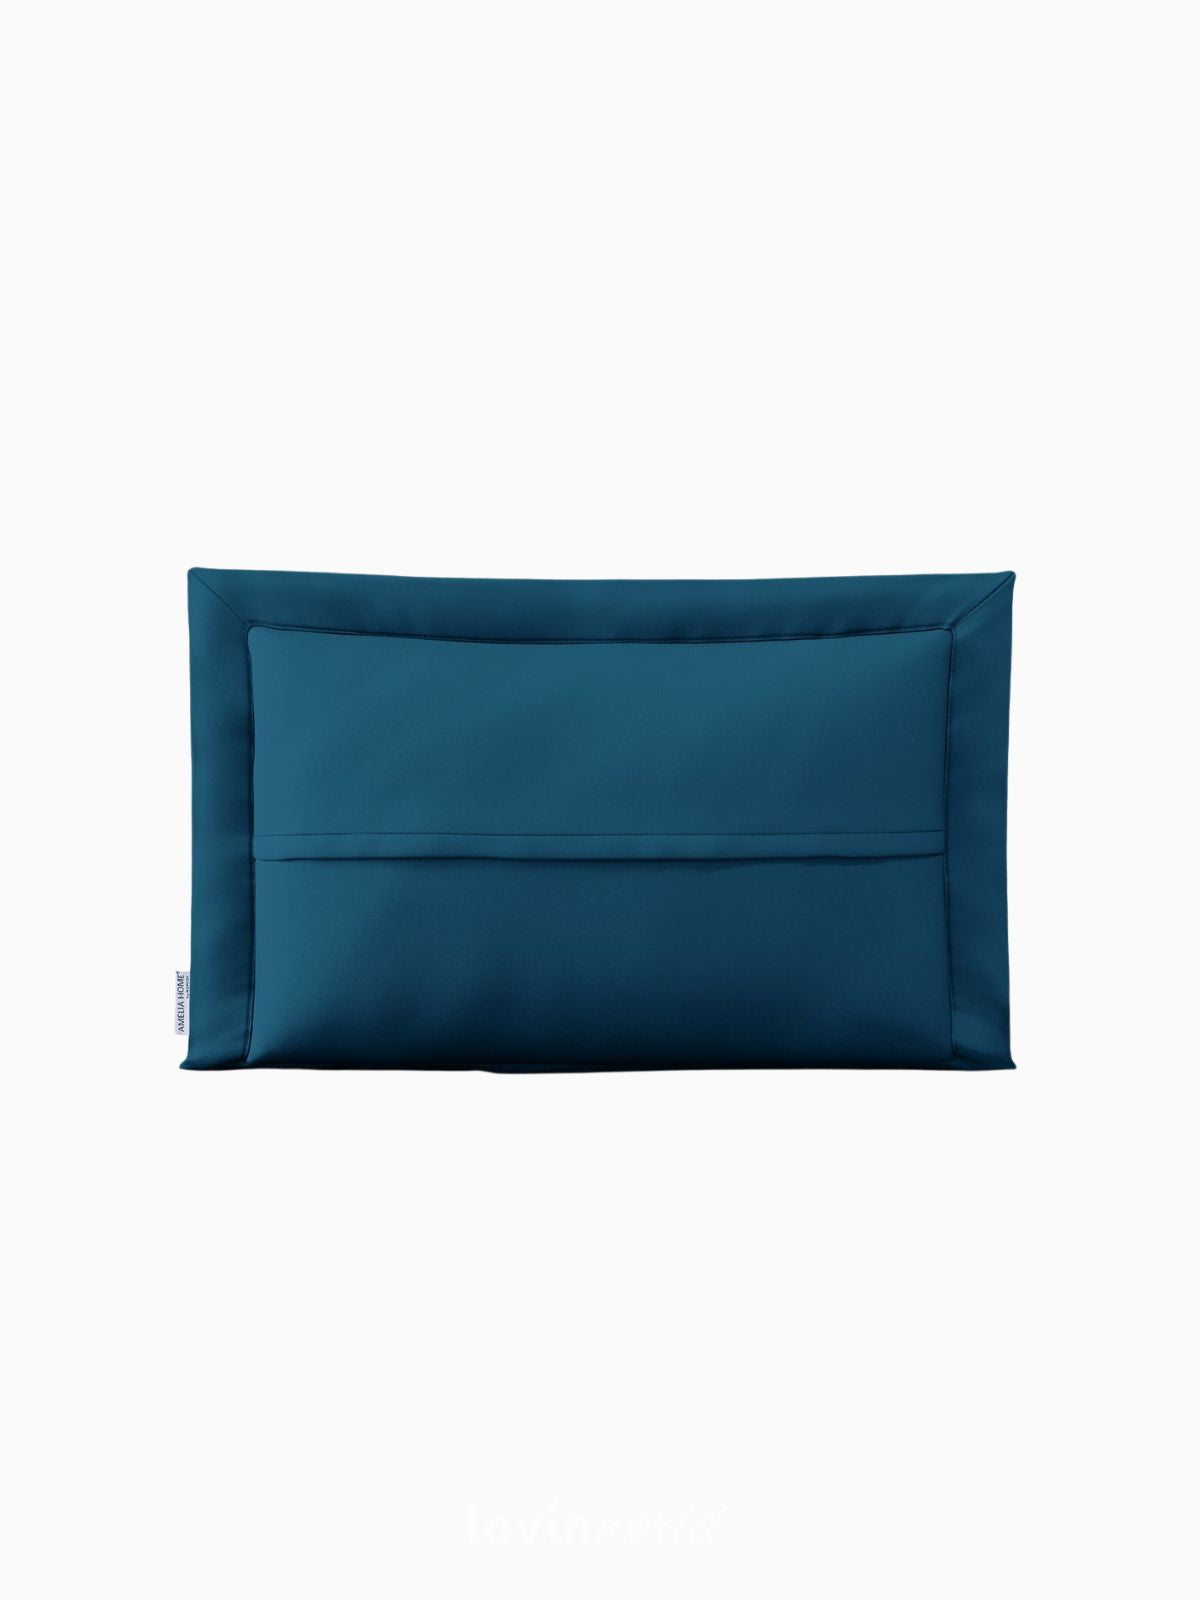 Cuscino decorativo Ophelia in colore blu 50x70 cm.-3